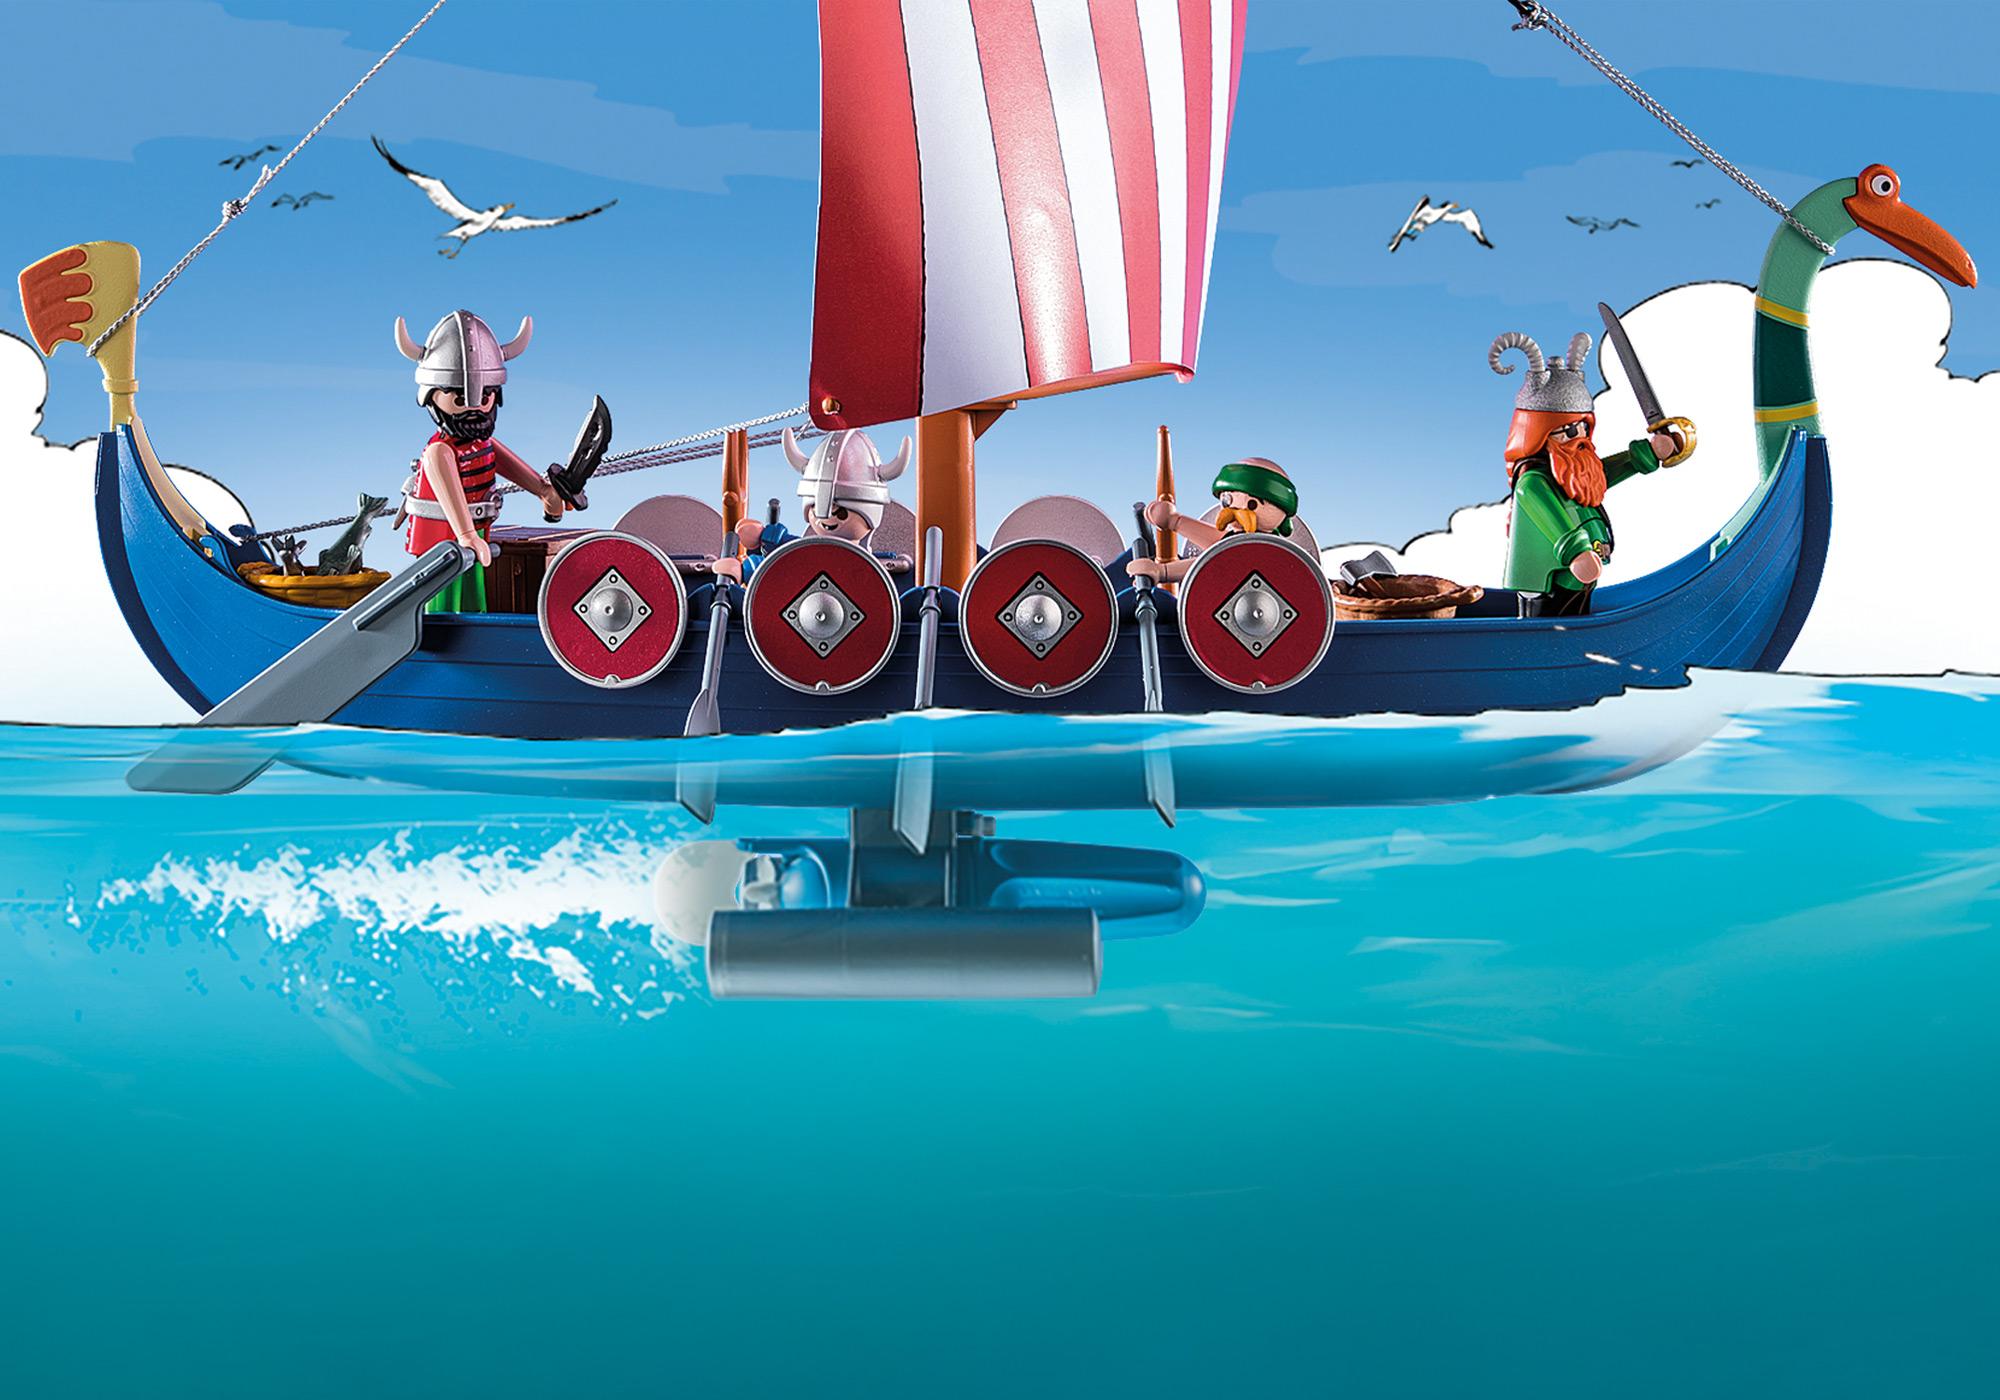 Le Calendrier de l'Avent pirate des Playmobil® Astérix - Astérix